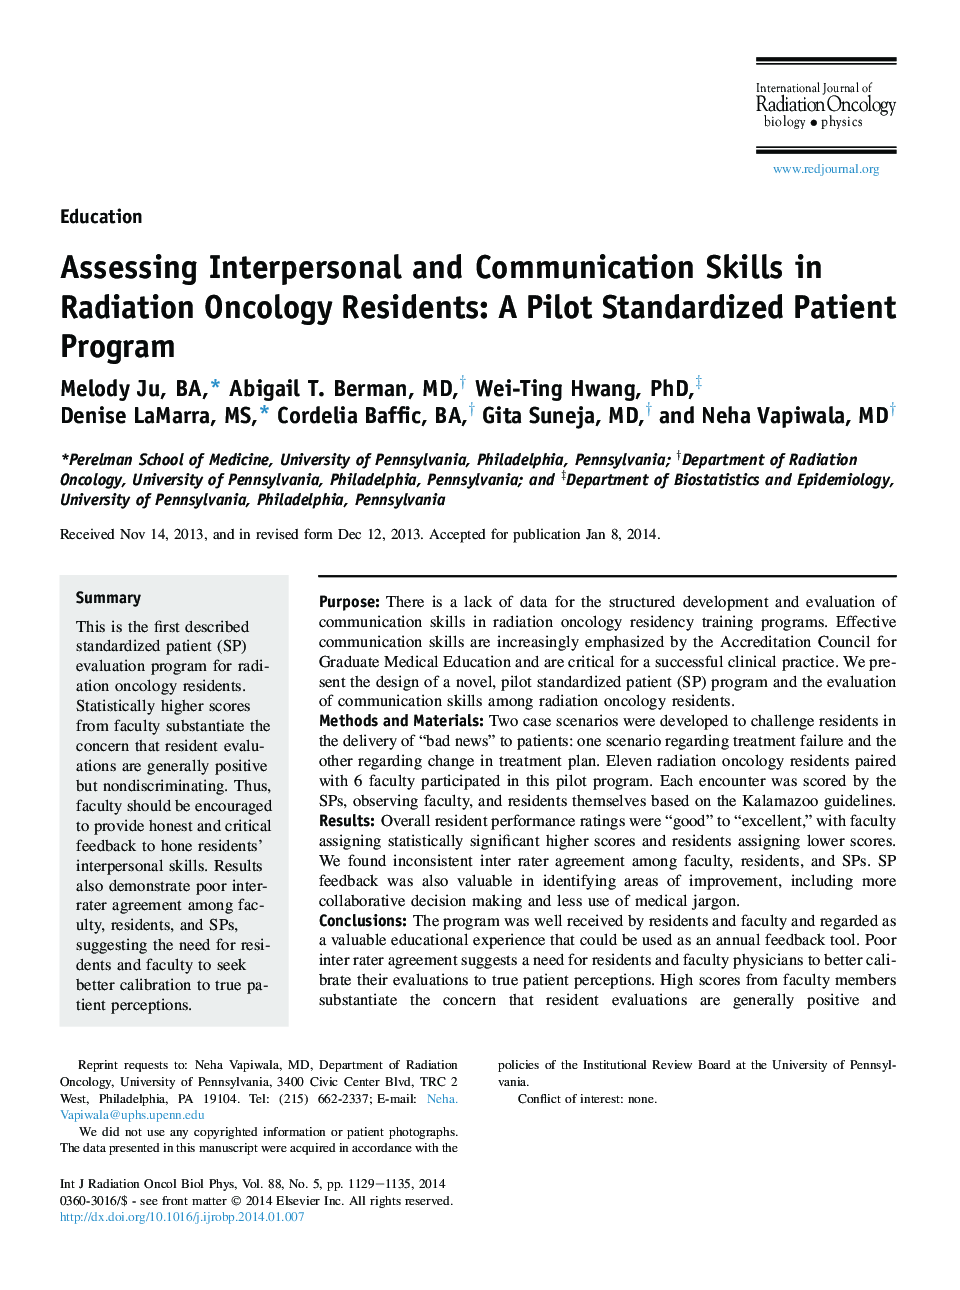 ارزیابی مهارت های بین فردی و ارتباطی در افراد مبتلا به انکولوژی رادیویی: یک برنامه بیمار استاندارد شده با خلبان 